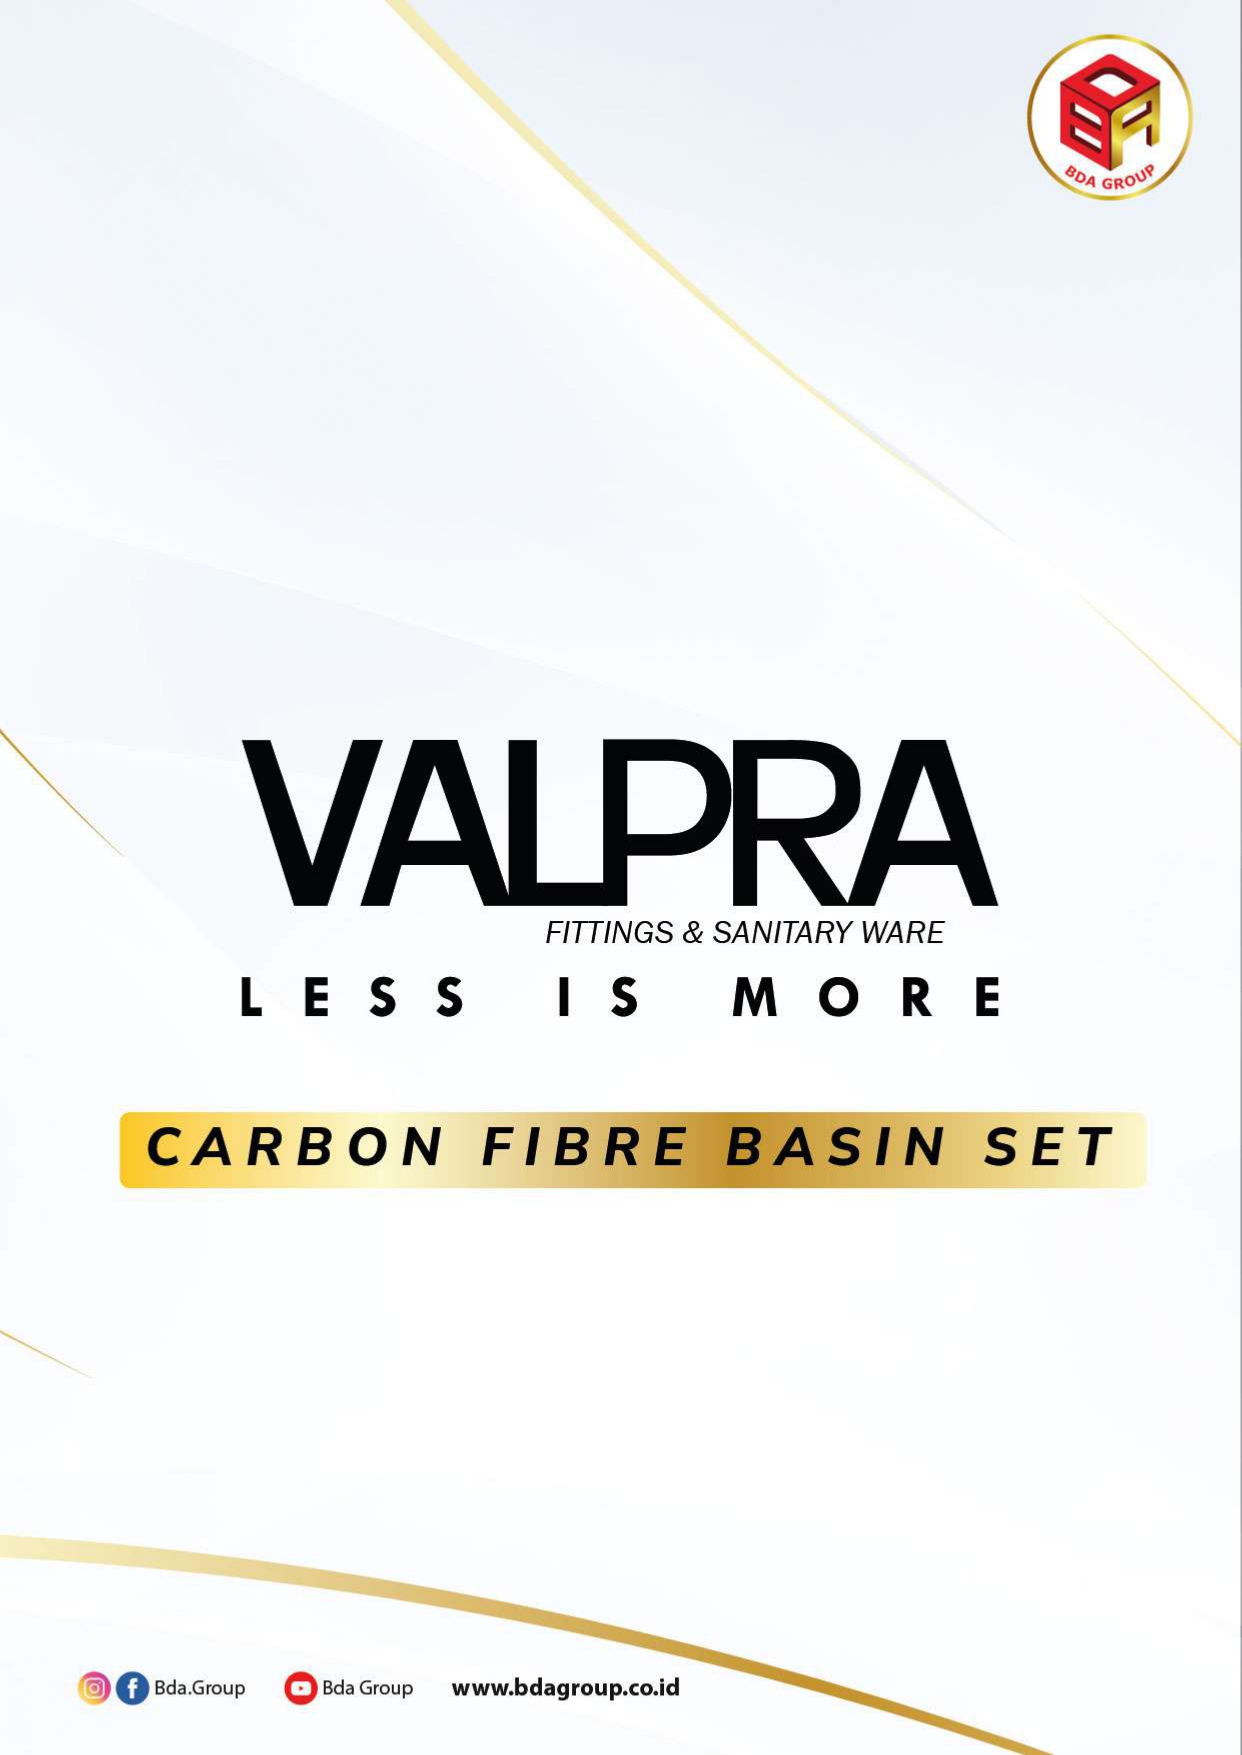 VALPRA Carbon Fibre Basin Set